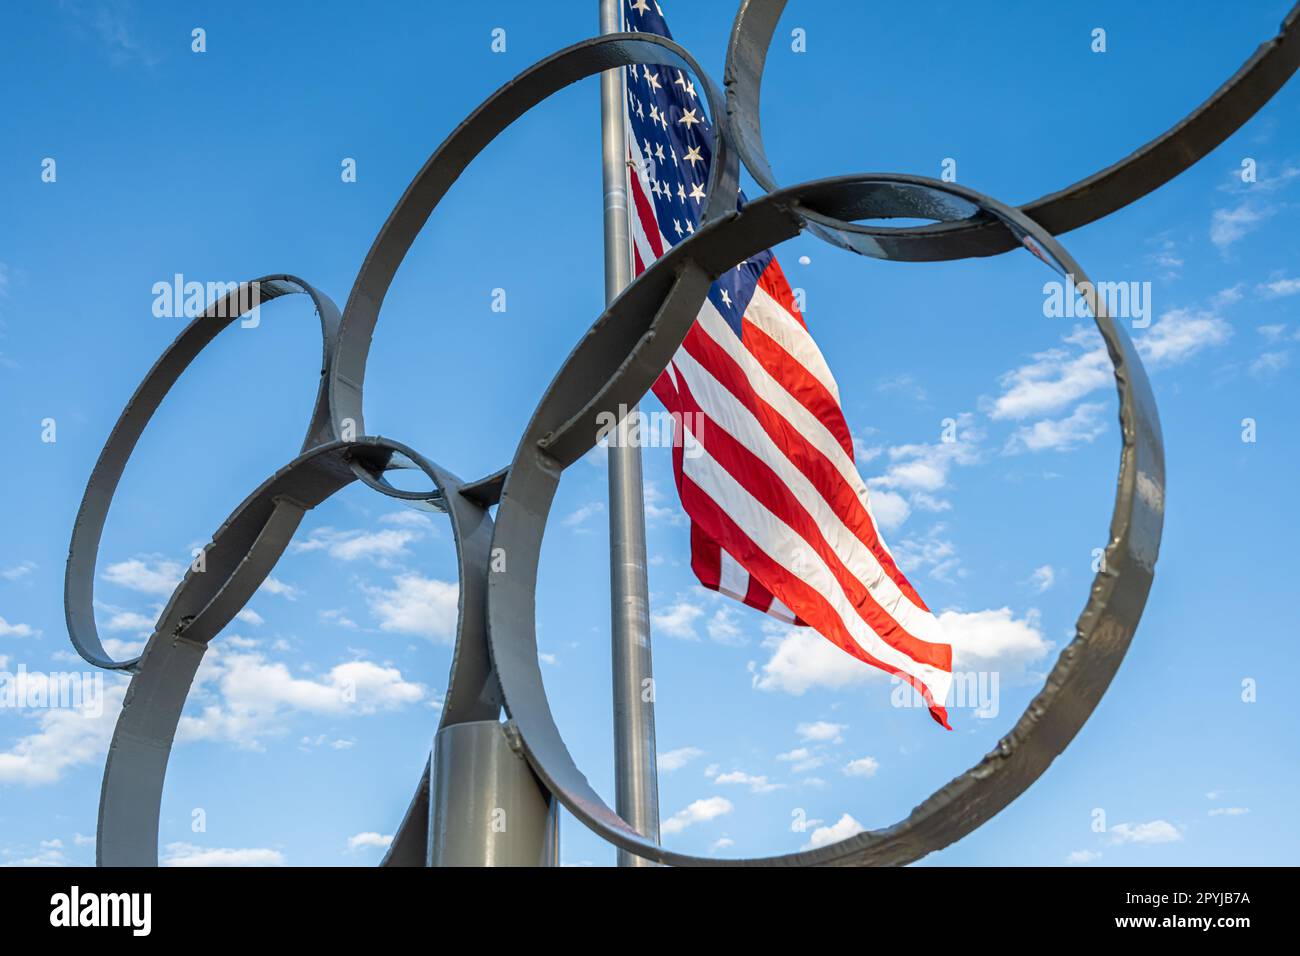 Die US-Flagge weht hinter den Olympischen Ringen im Lake Lanier Olympic Park, einem Veranstaltungsort des olympischen Ruder- und Kanu-/Kajakwettbewerbs, in Gainesville, GA. Stockfoto